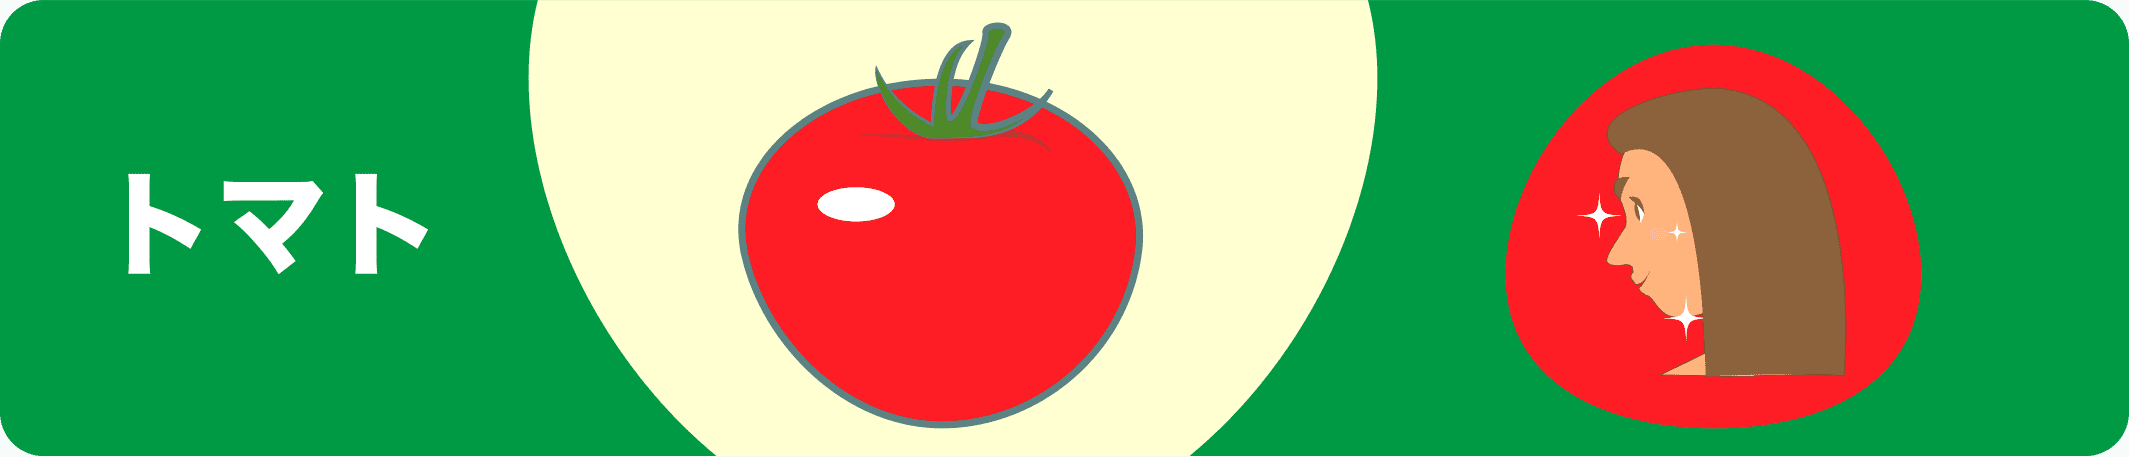 ミニトマト